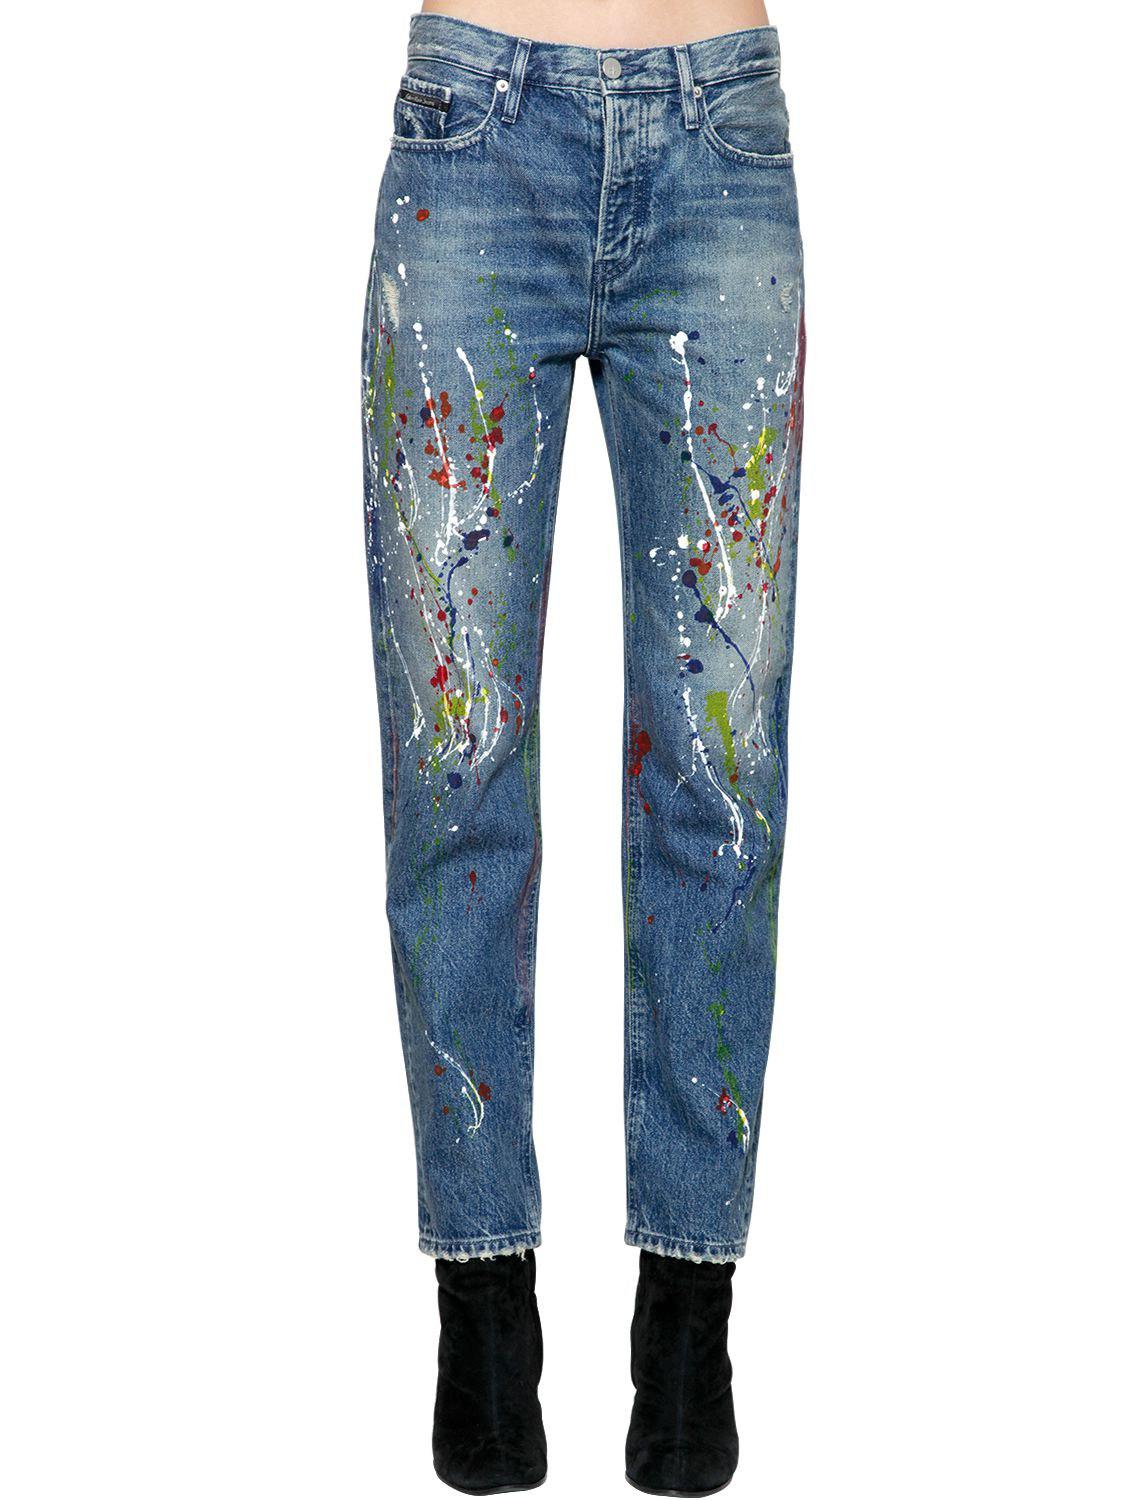 Calvin Klein Jeans Aus Denim Mit Farbspritzern in Blau | Lyst DE